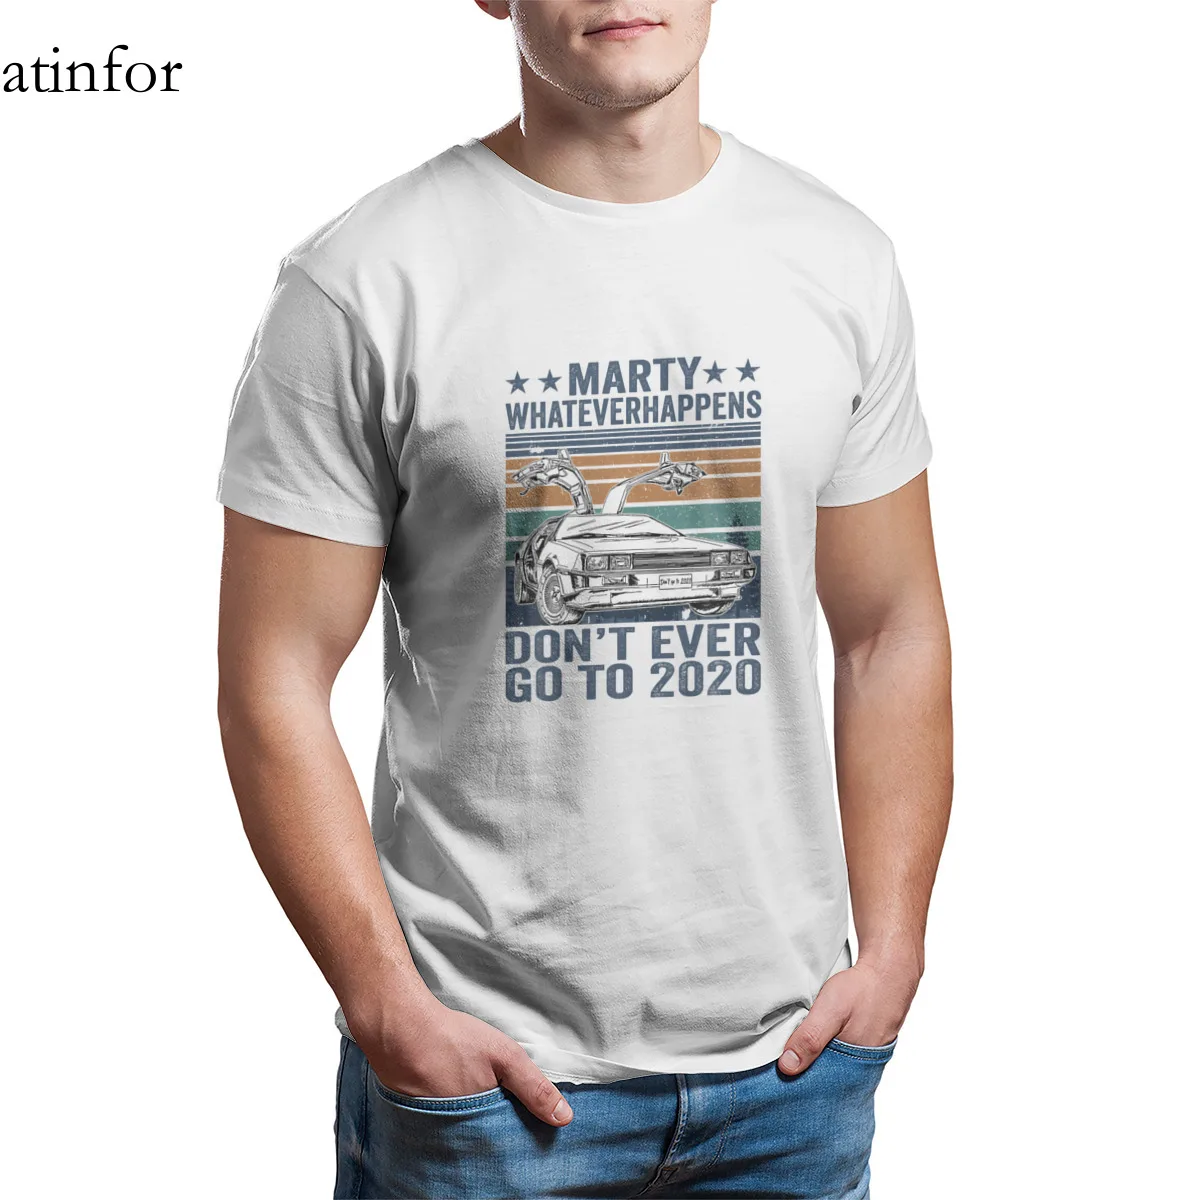 

Винтажная футболка с надписью «Автомобиль Марти», «whateчинговые» надписи «Don't Ever Go», забавные парные футболки под заказ, подходящие к кавайны...